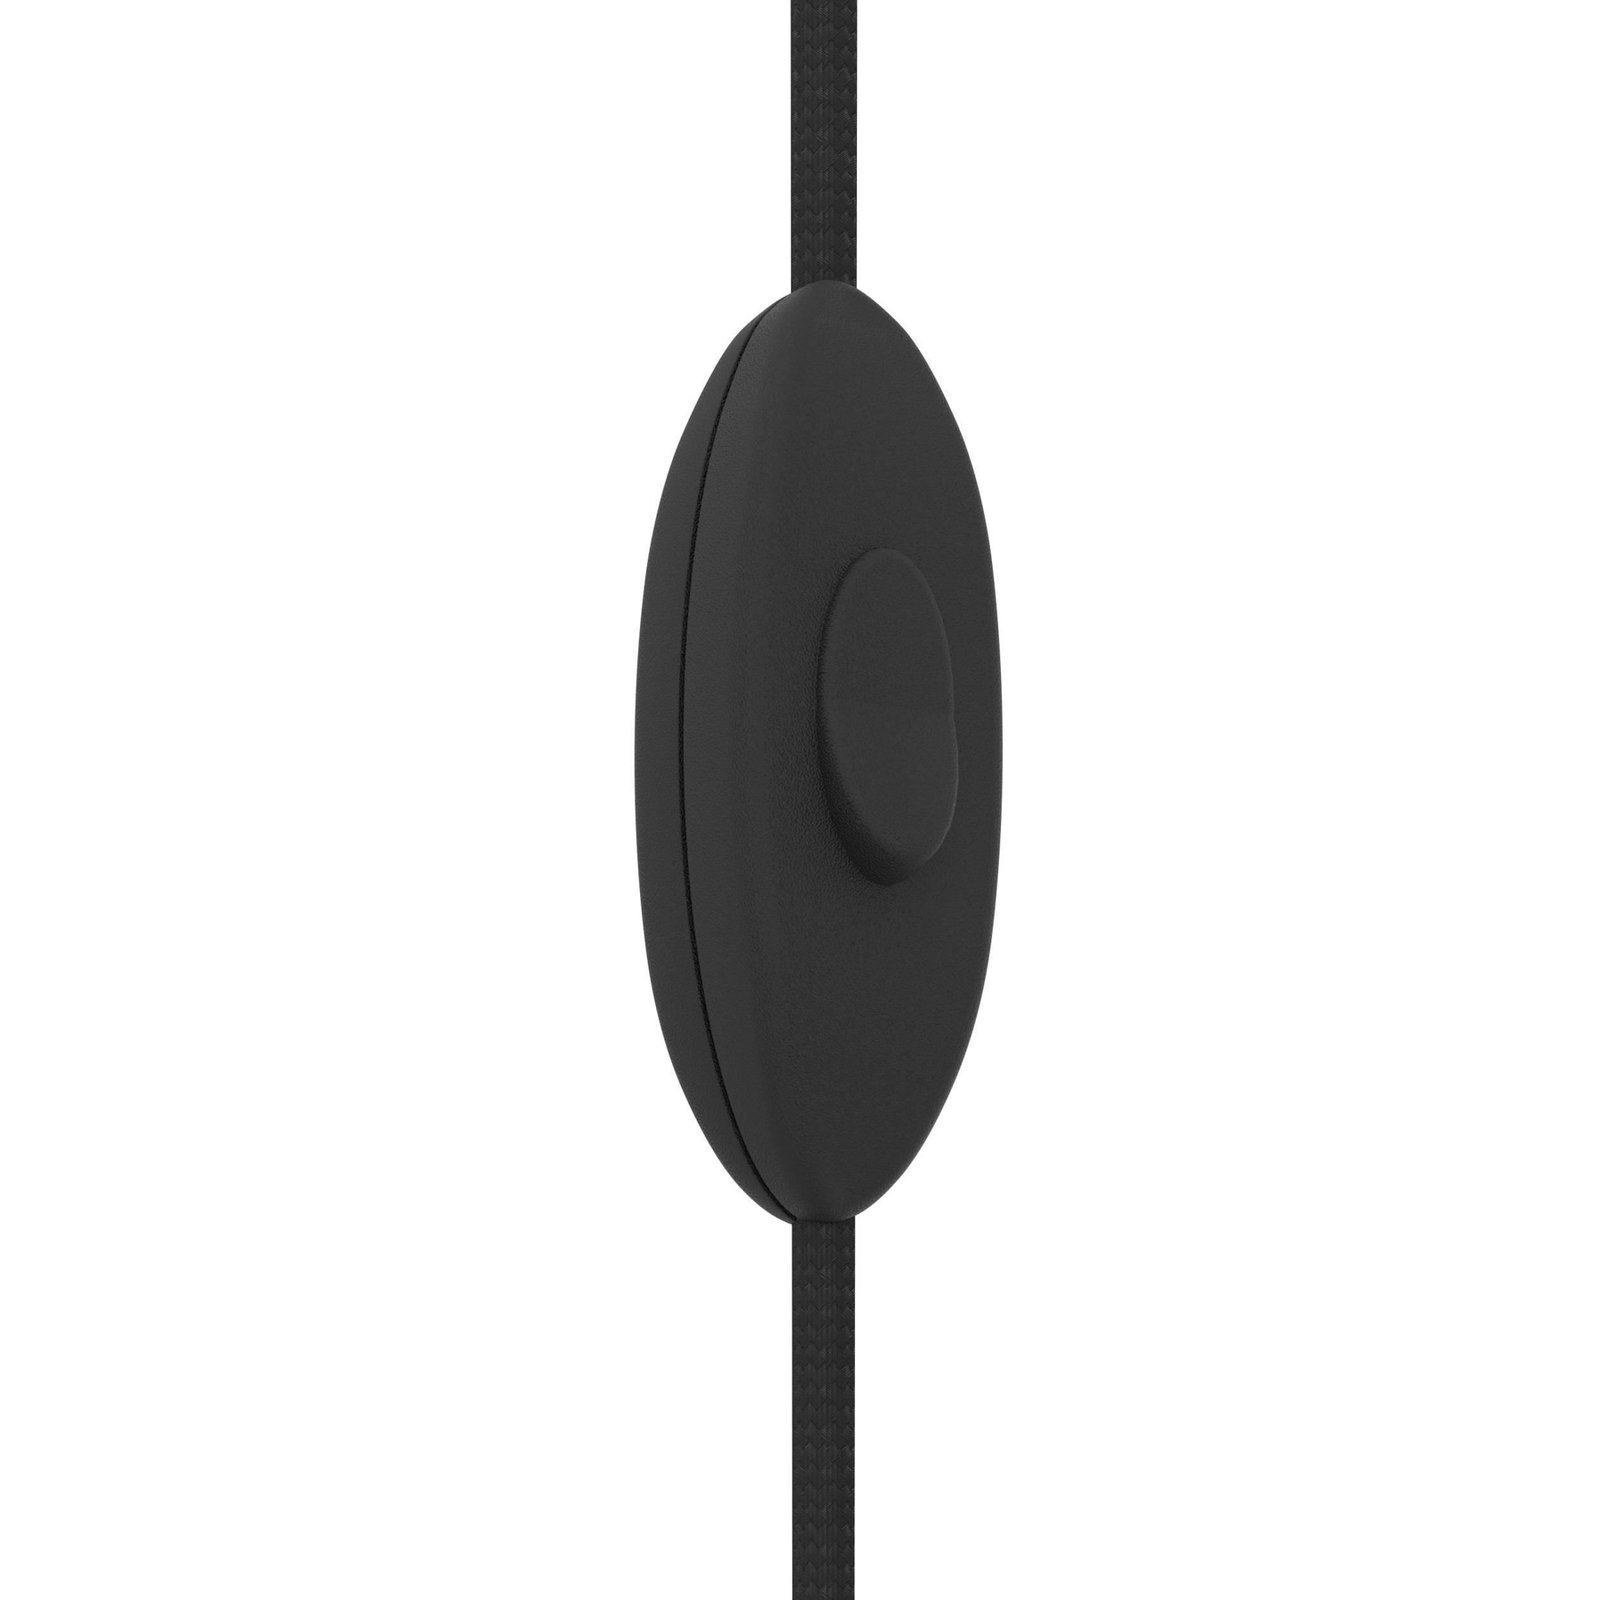 Hanglamp Pinetina, projectie 40 cm, zwart, stekker